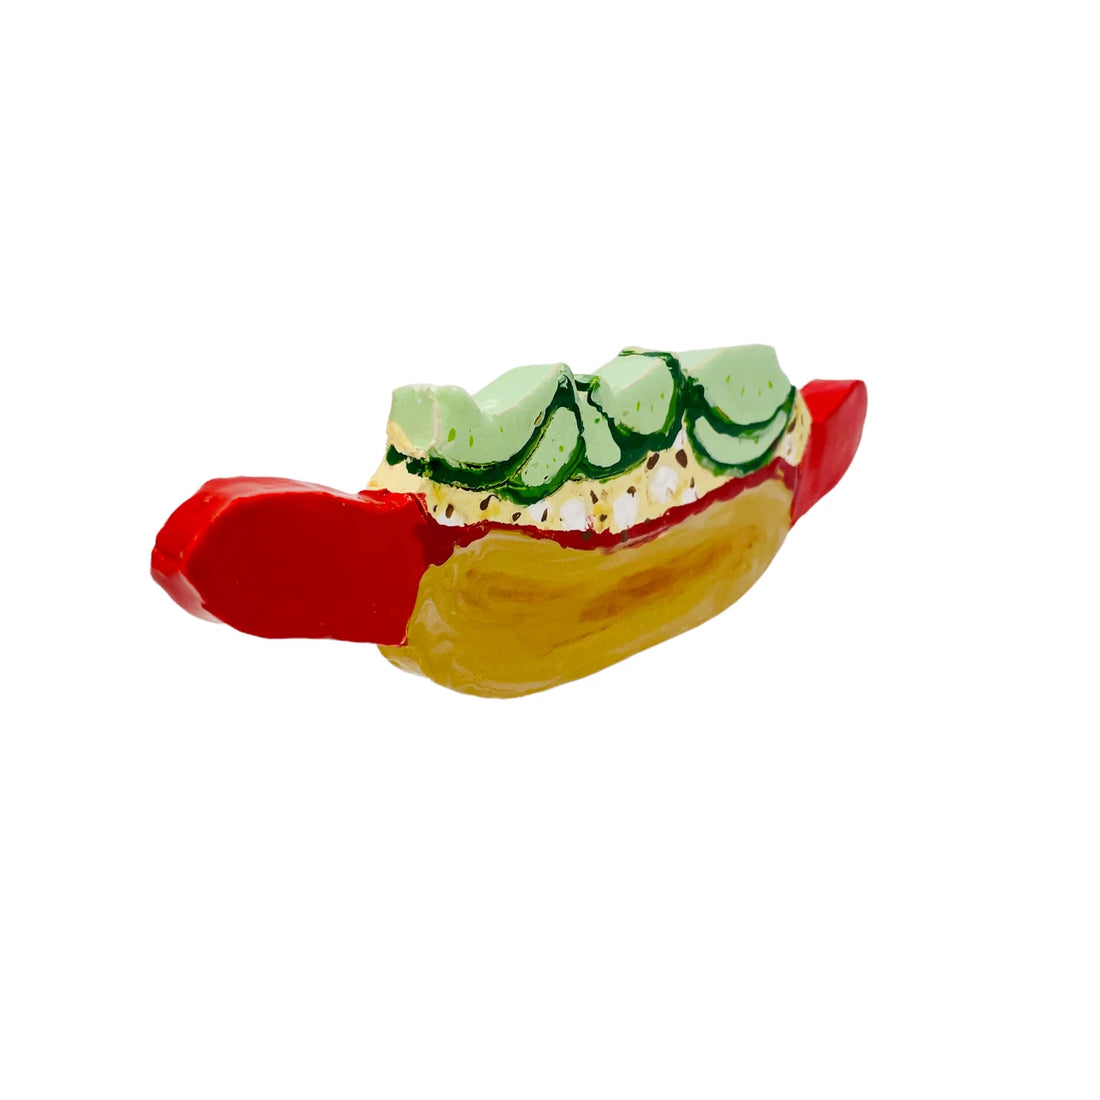 Vægophæng - Hotdog med rød pølse